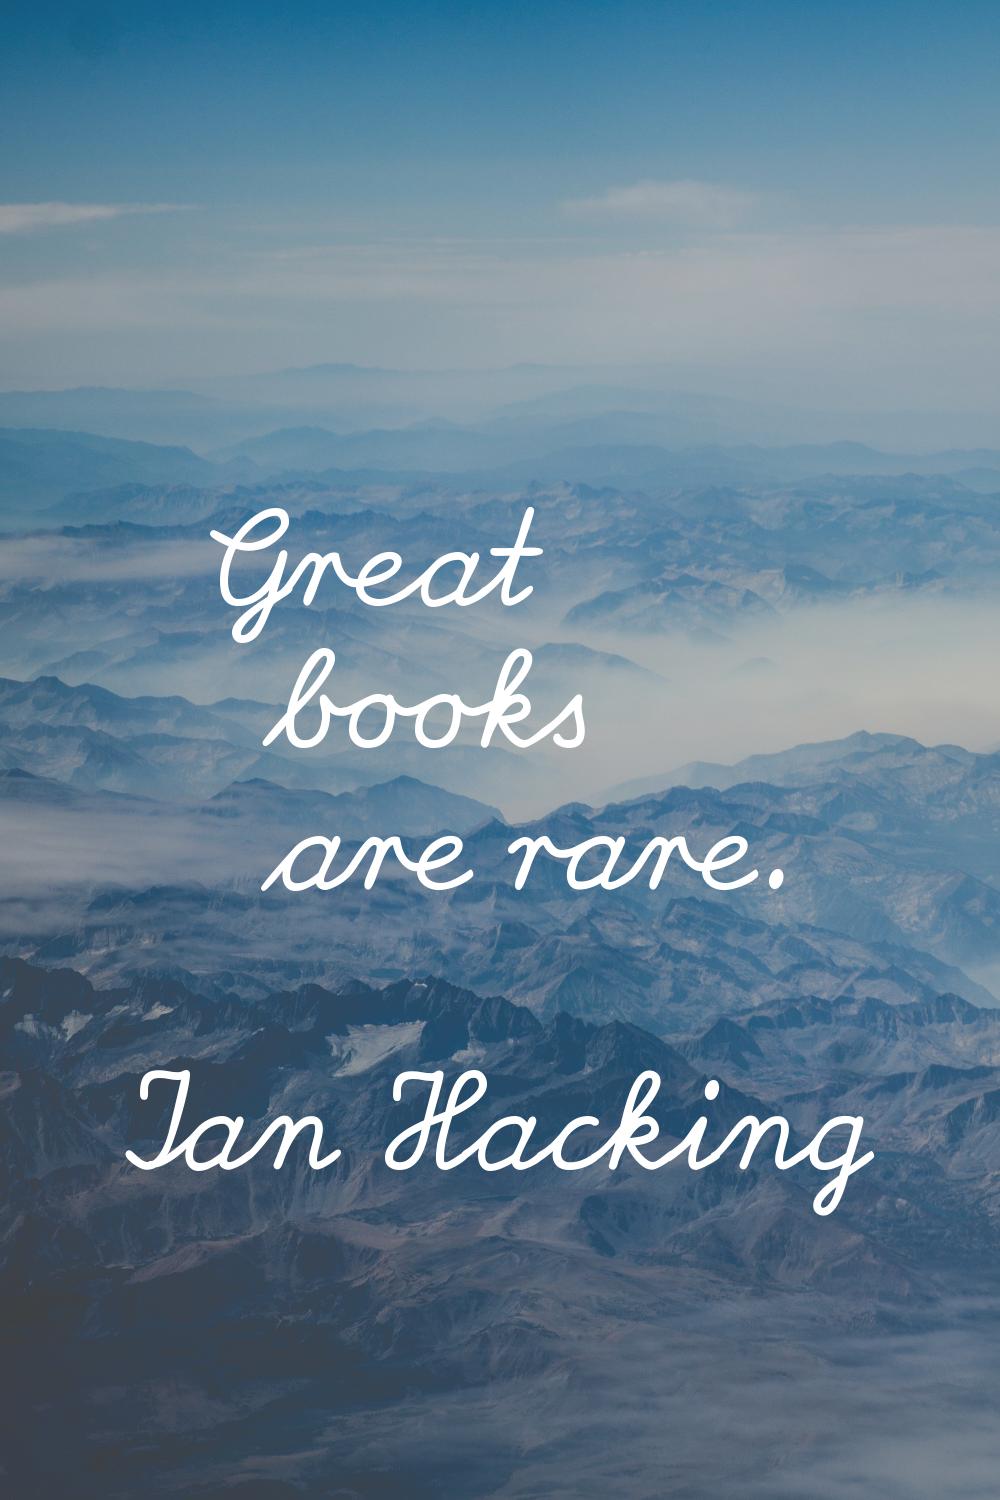 Great books are rare.